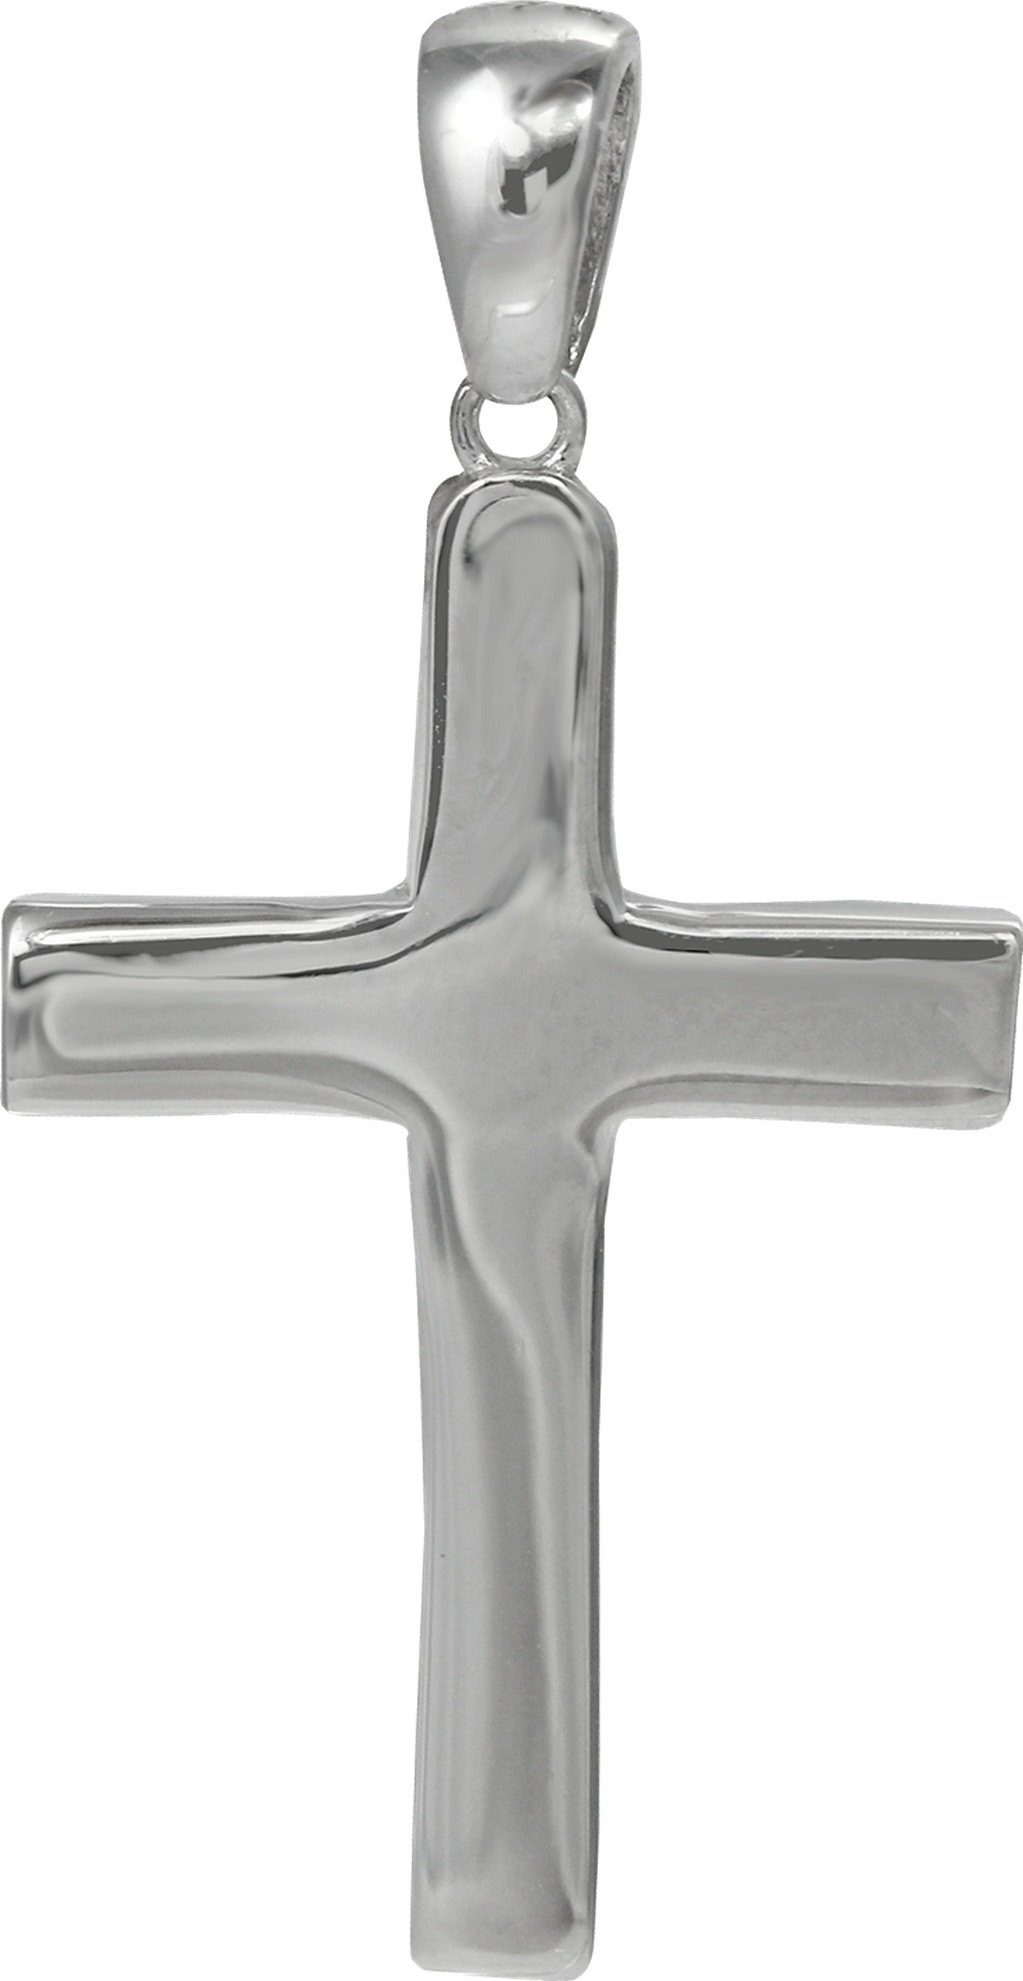 SilberDream Kettenanhänger SilberDream Ketten Anhänger -Kreuz-, Sterling Kreuzanhänger Silber, 925 Großes silber